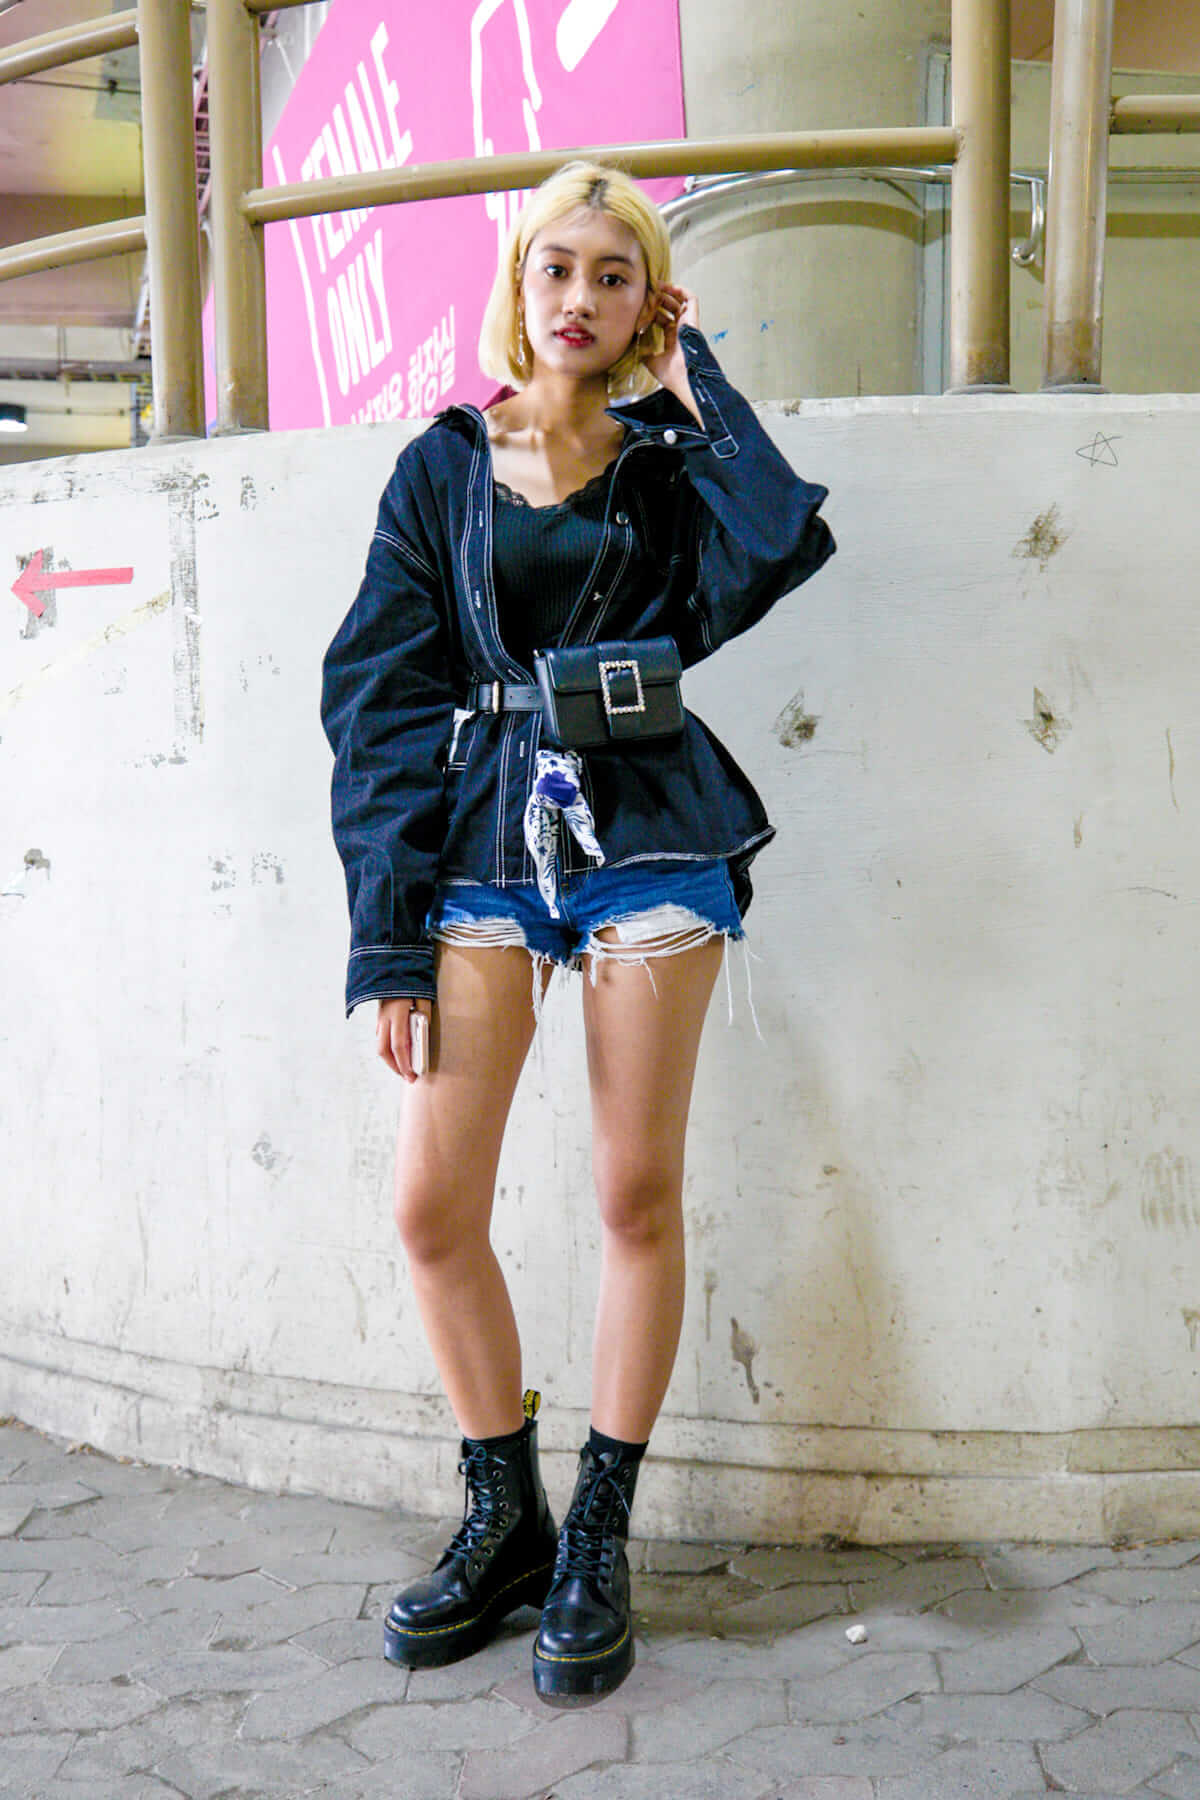 音楽フェス Ultra Korea ファッションスナップ 韓国美女たちの18最新ファッショントレンド Qetic